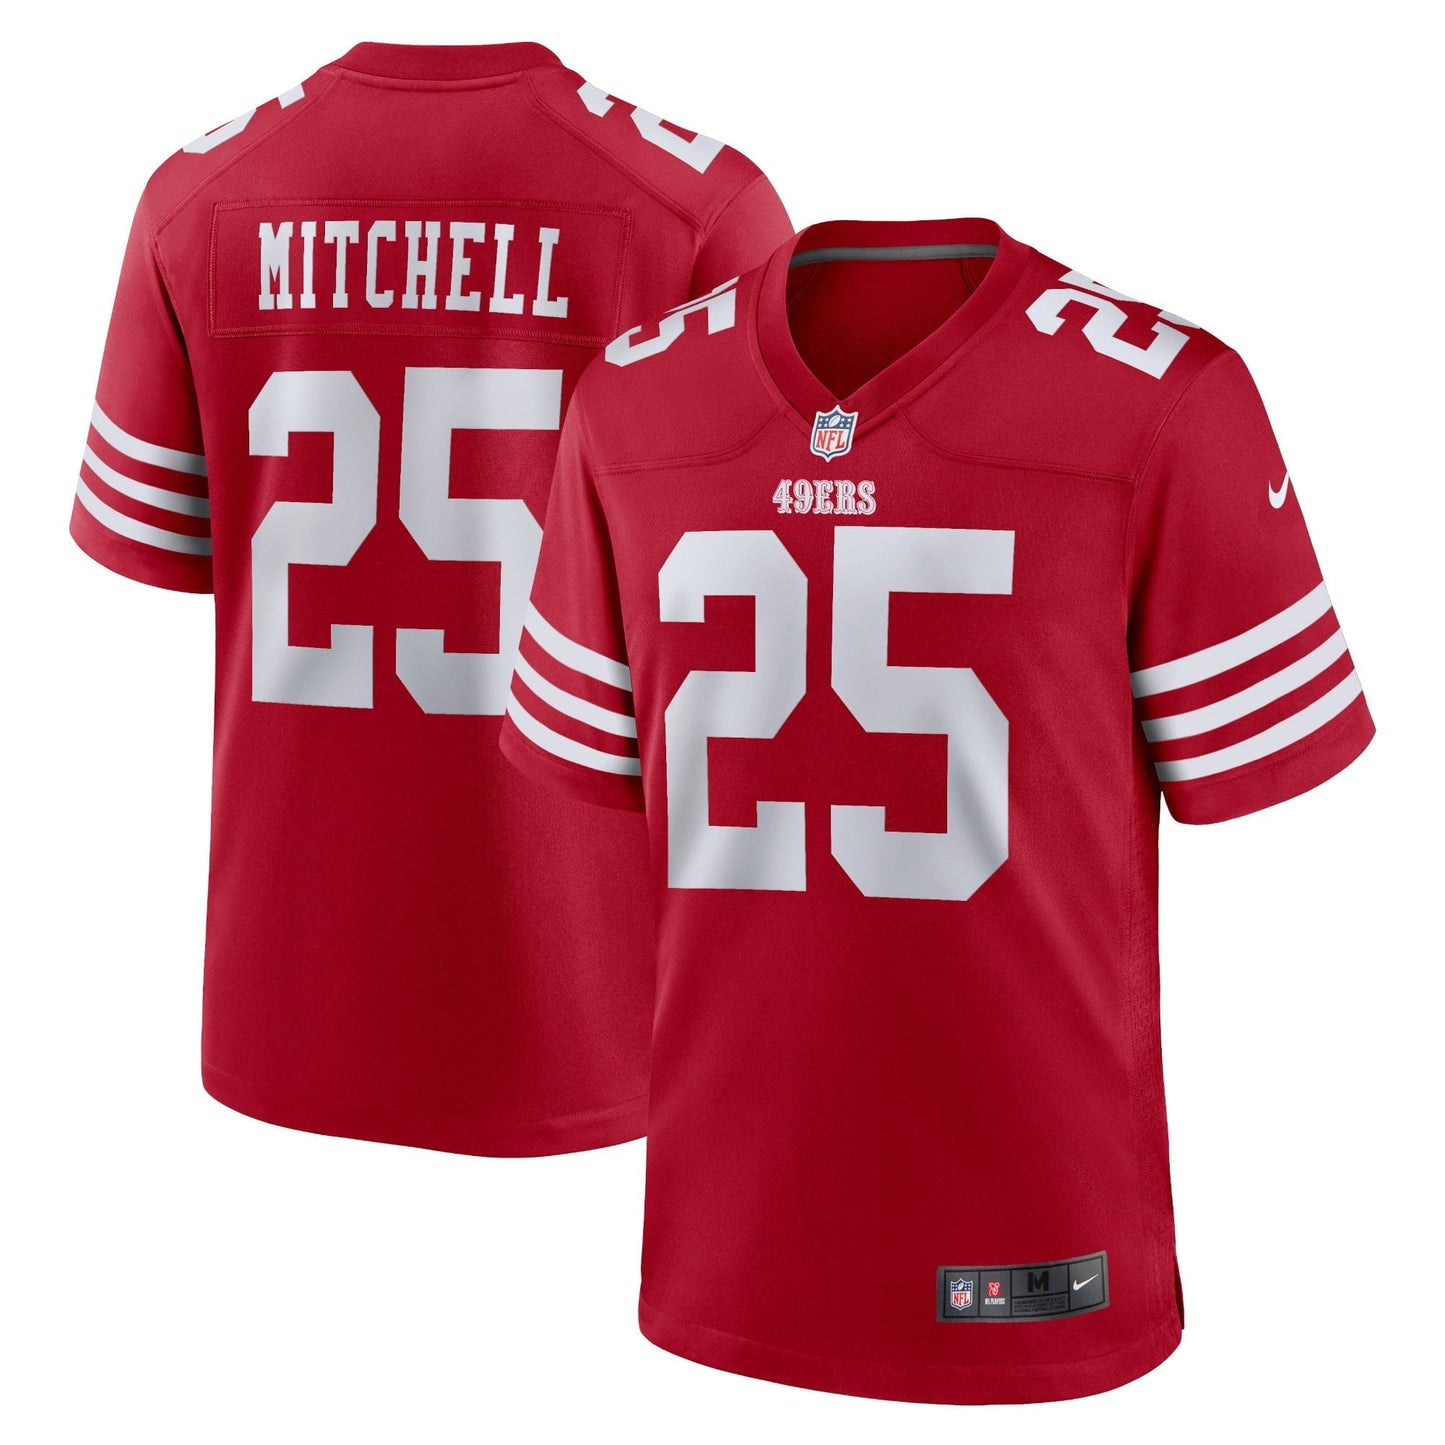 Men's Nike Elijah Mitchell Scarlet San Francisco 49ers Team Player Game Jersey